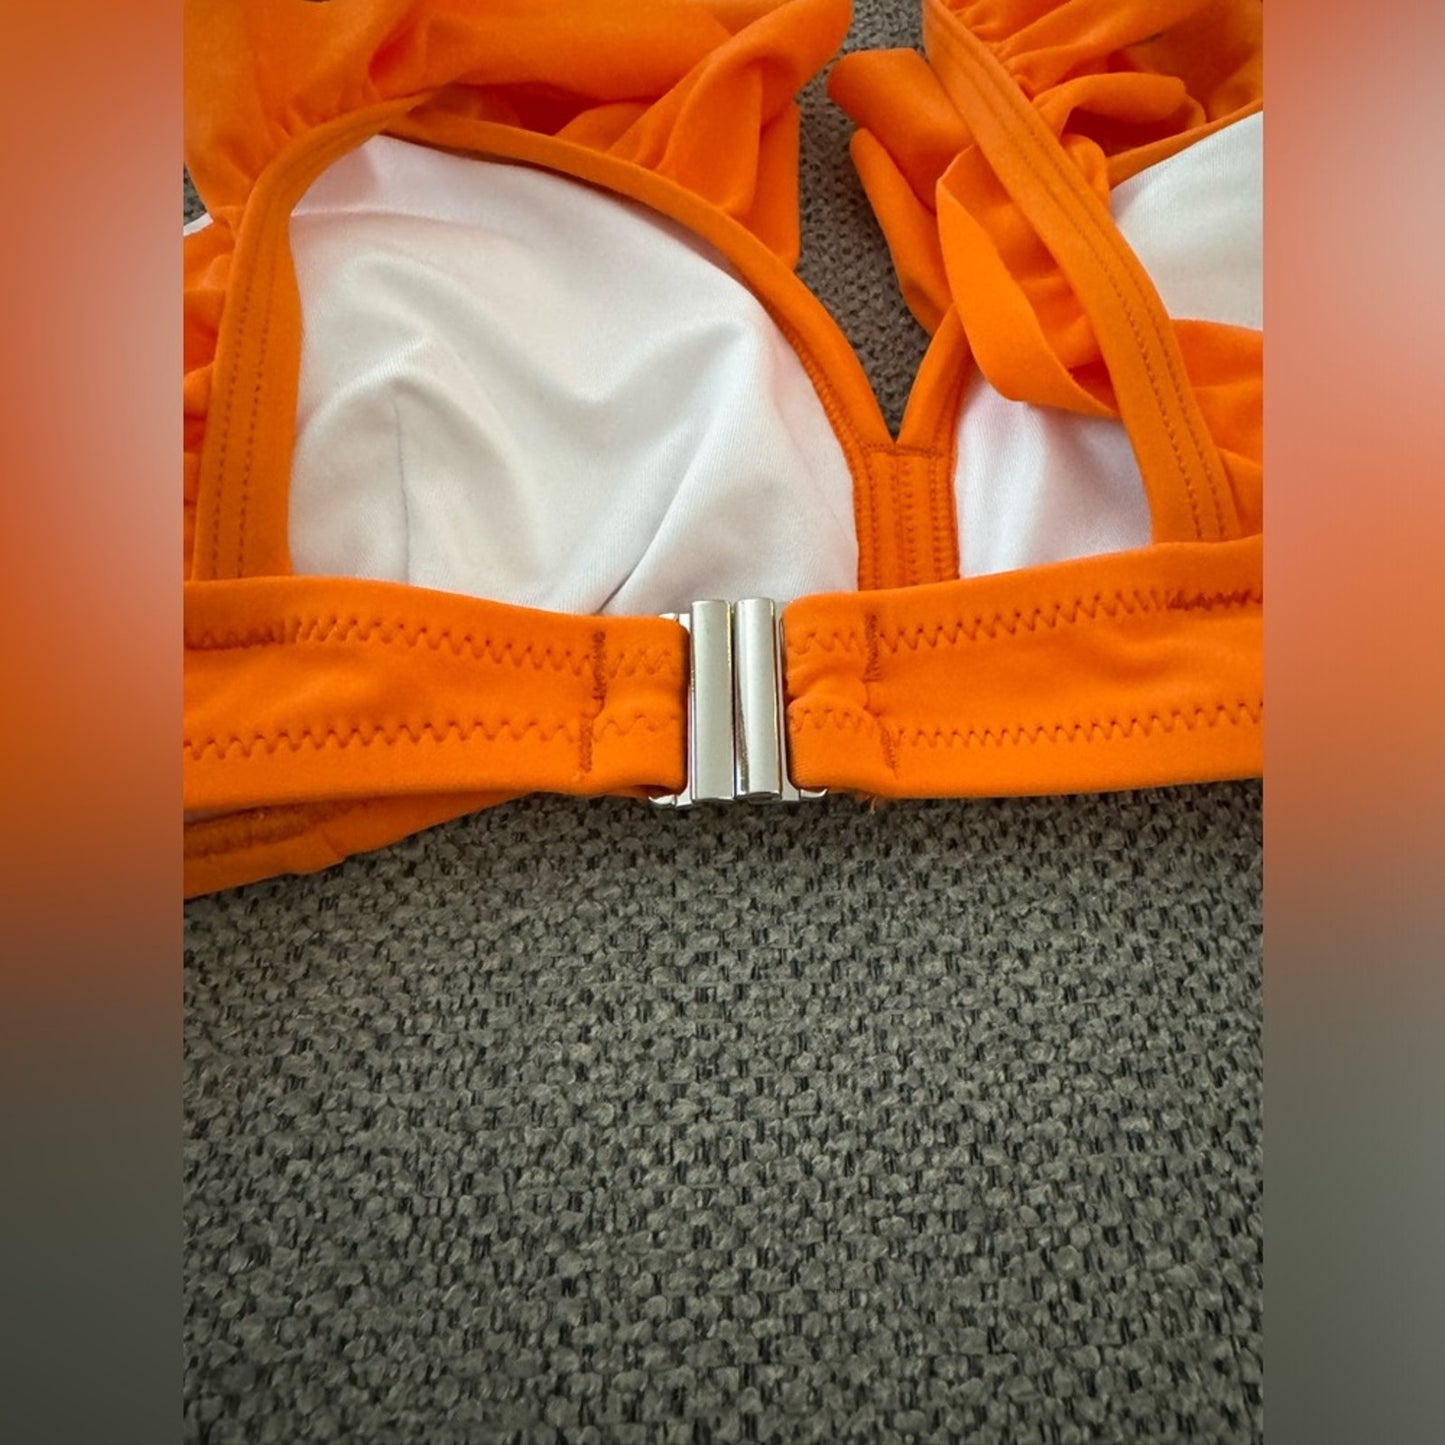 NWT LG Cupshe Orange Ruffle Silver Clasp Bikini Top